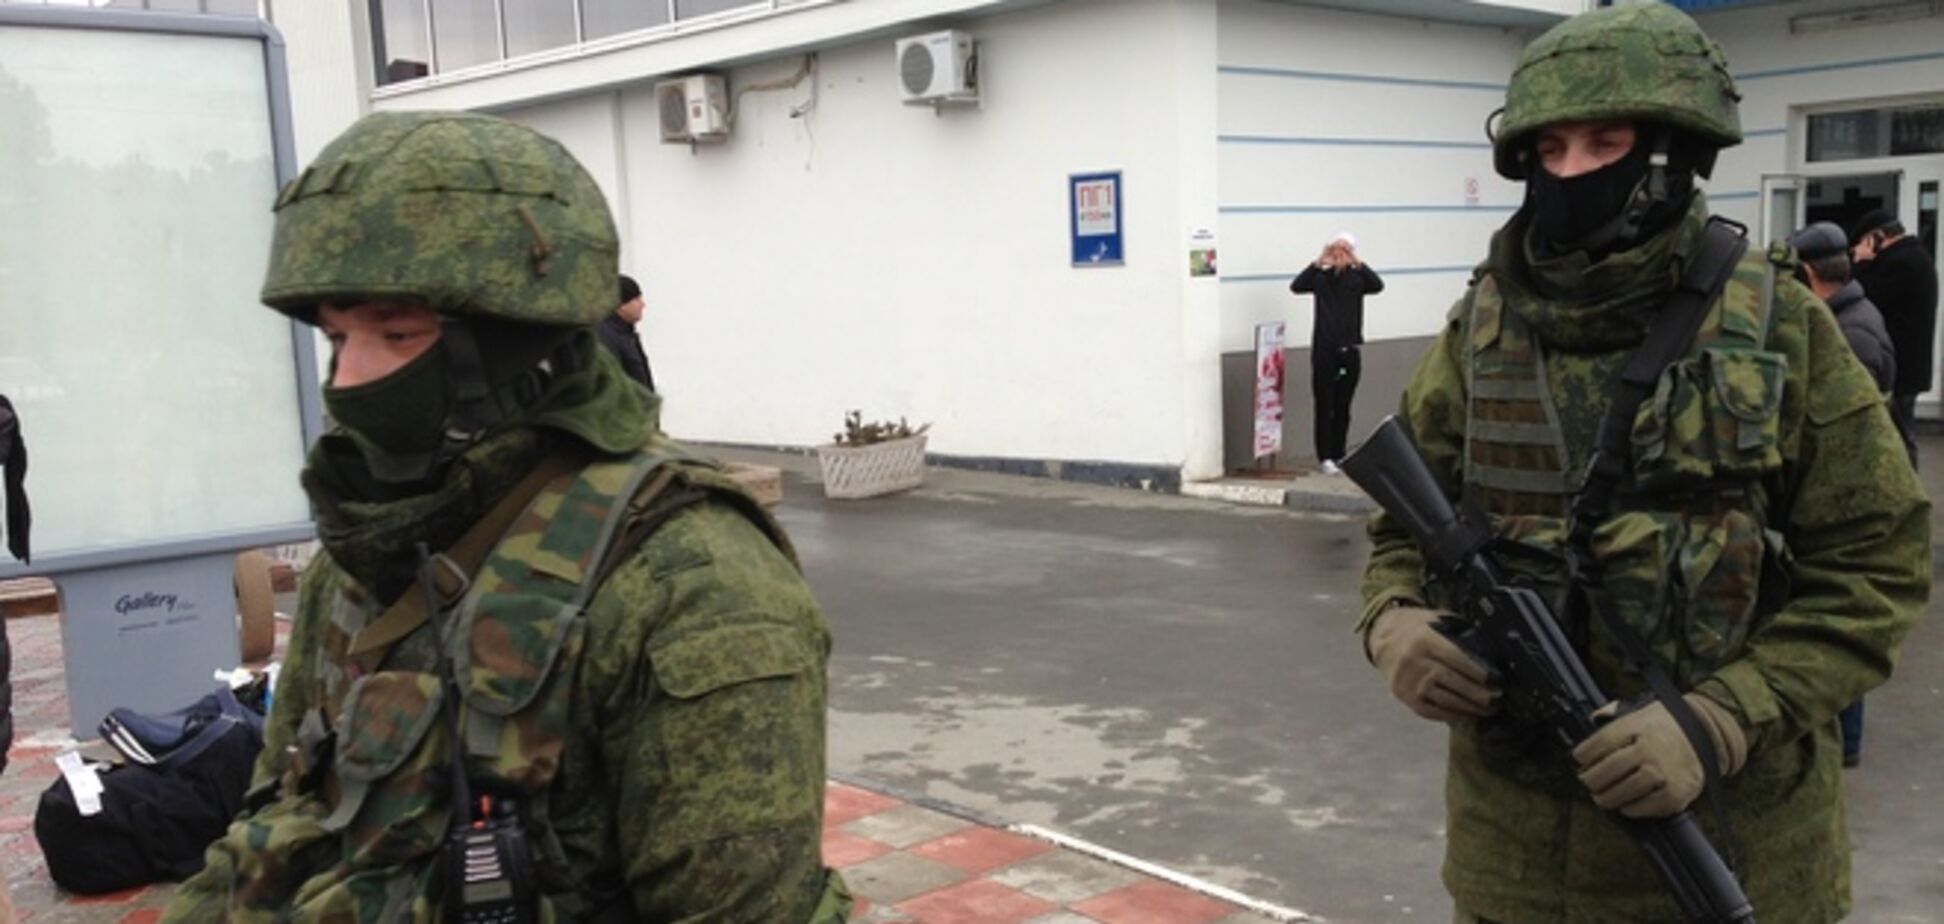 Після окупації Криму татари і українці опинилися в небезпеці - ОБСЄ